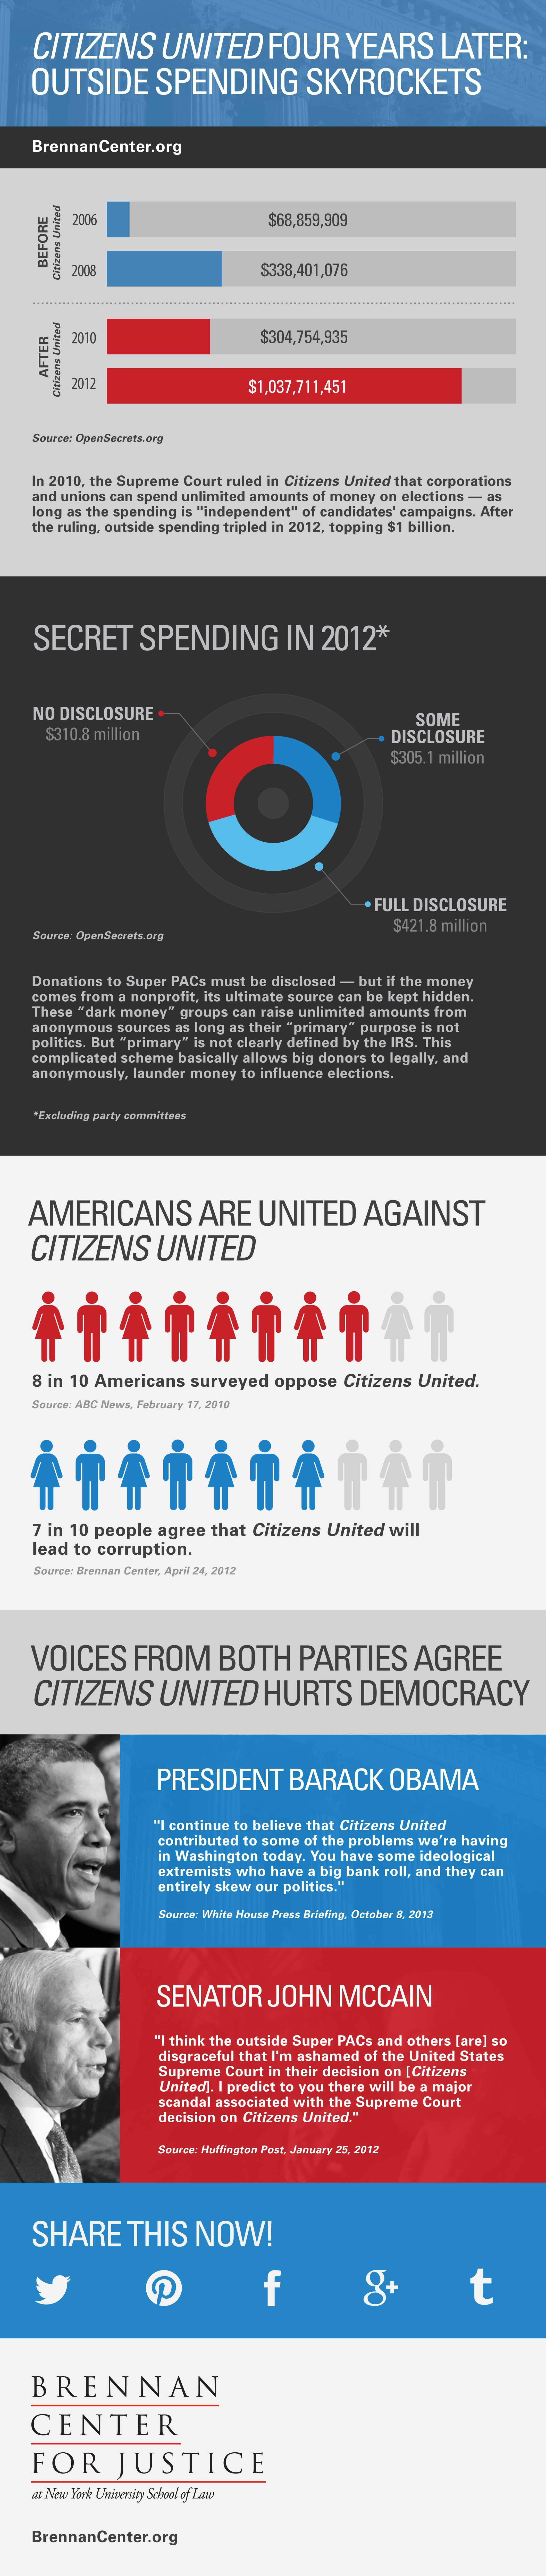 Citizens United 